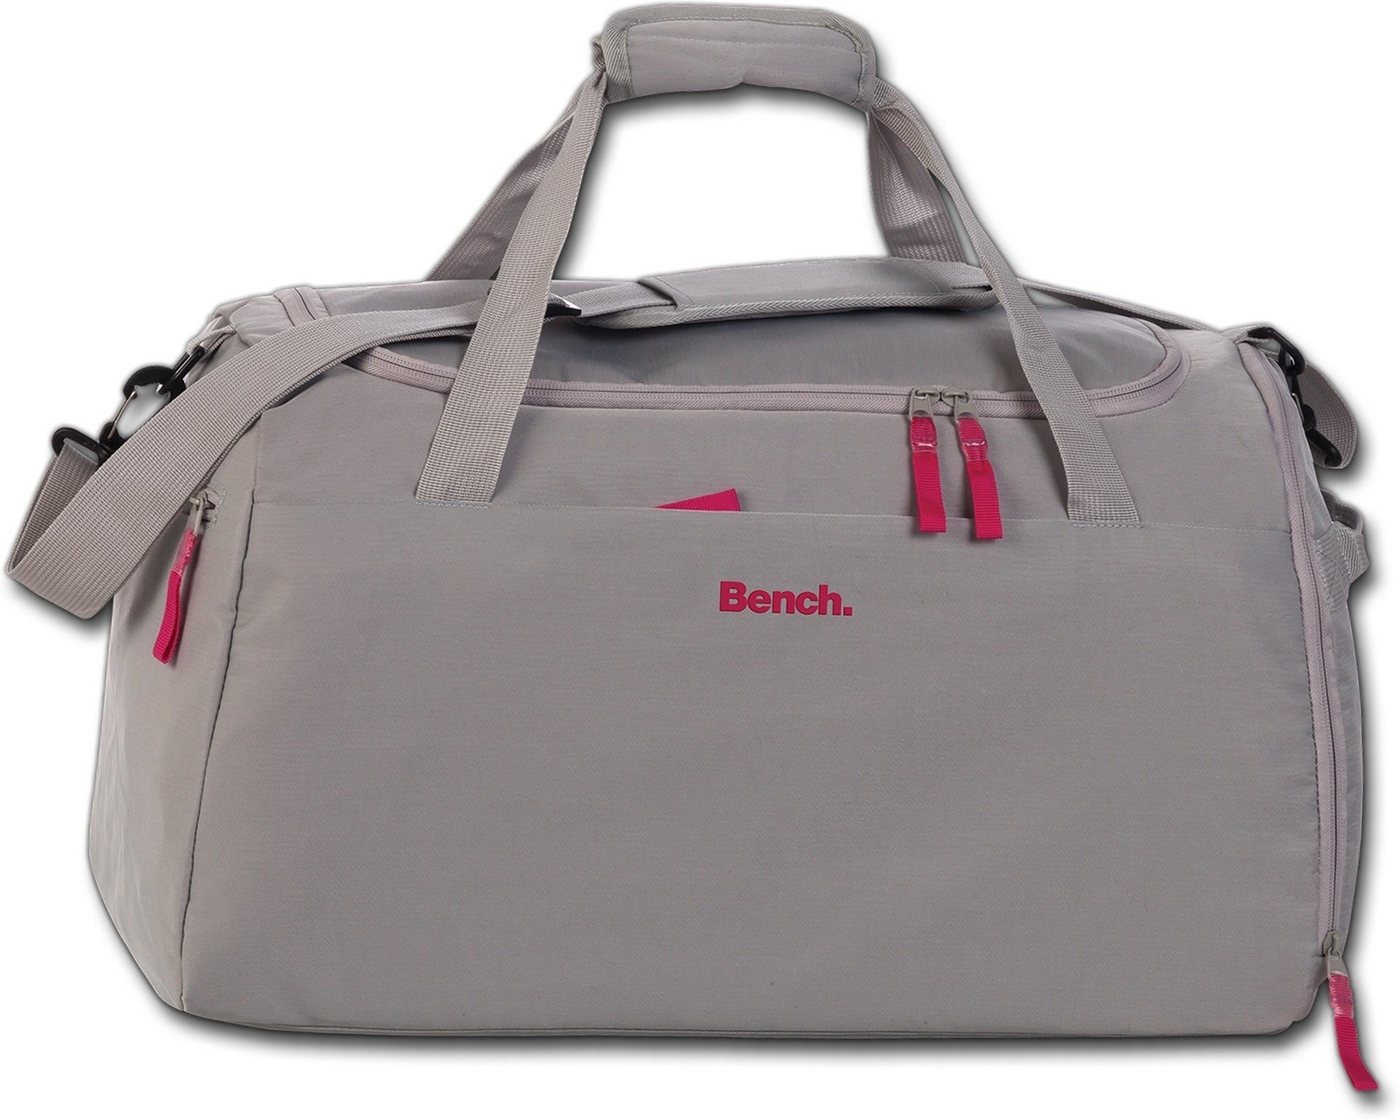 Bench. Sporttasche Bench Damen Sporttasche Nylon grau, Damen Tasche Nylon grau, groß 50x30x29cm, uni von Bench.